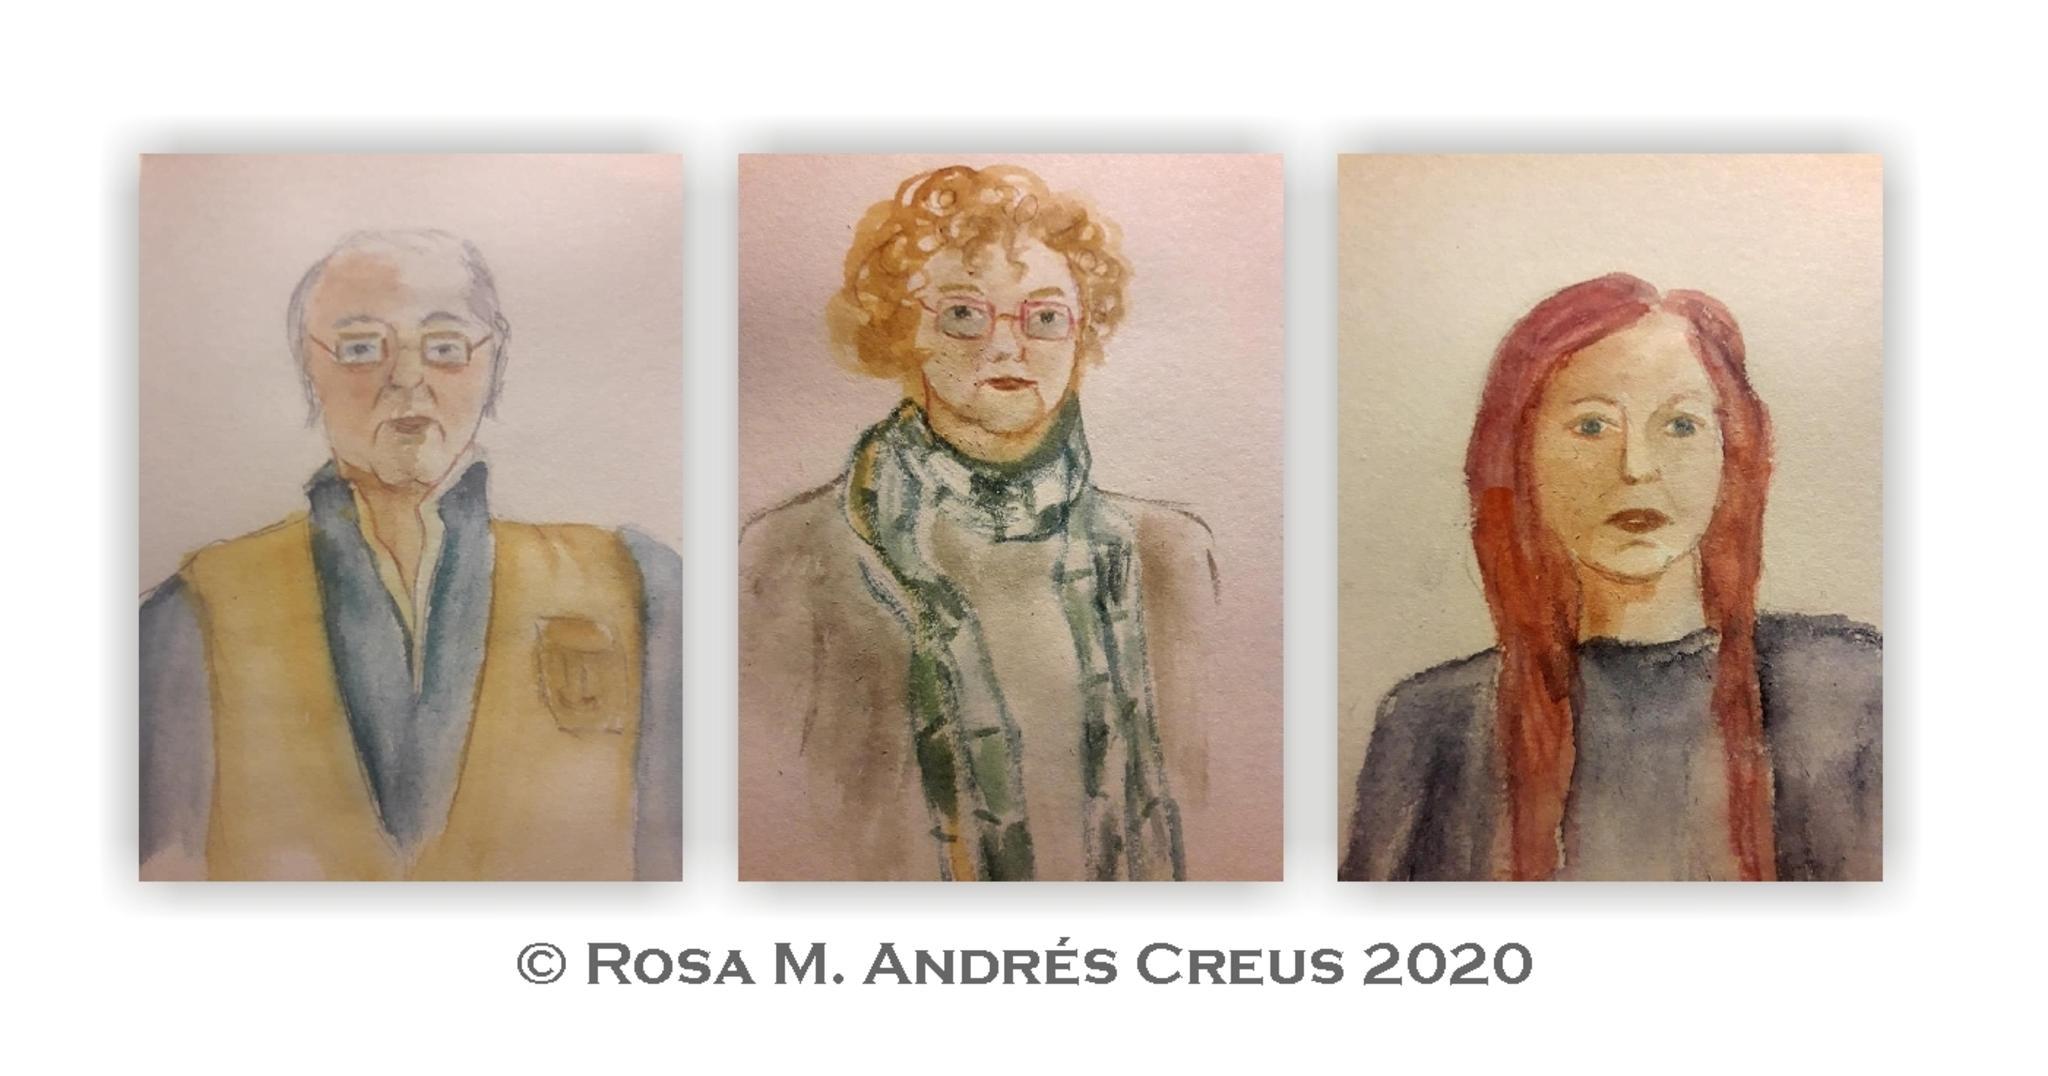  Rosa Maria Andrs Creus 2020